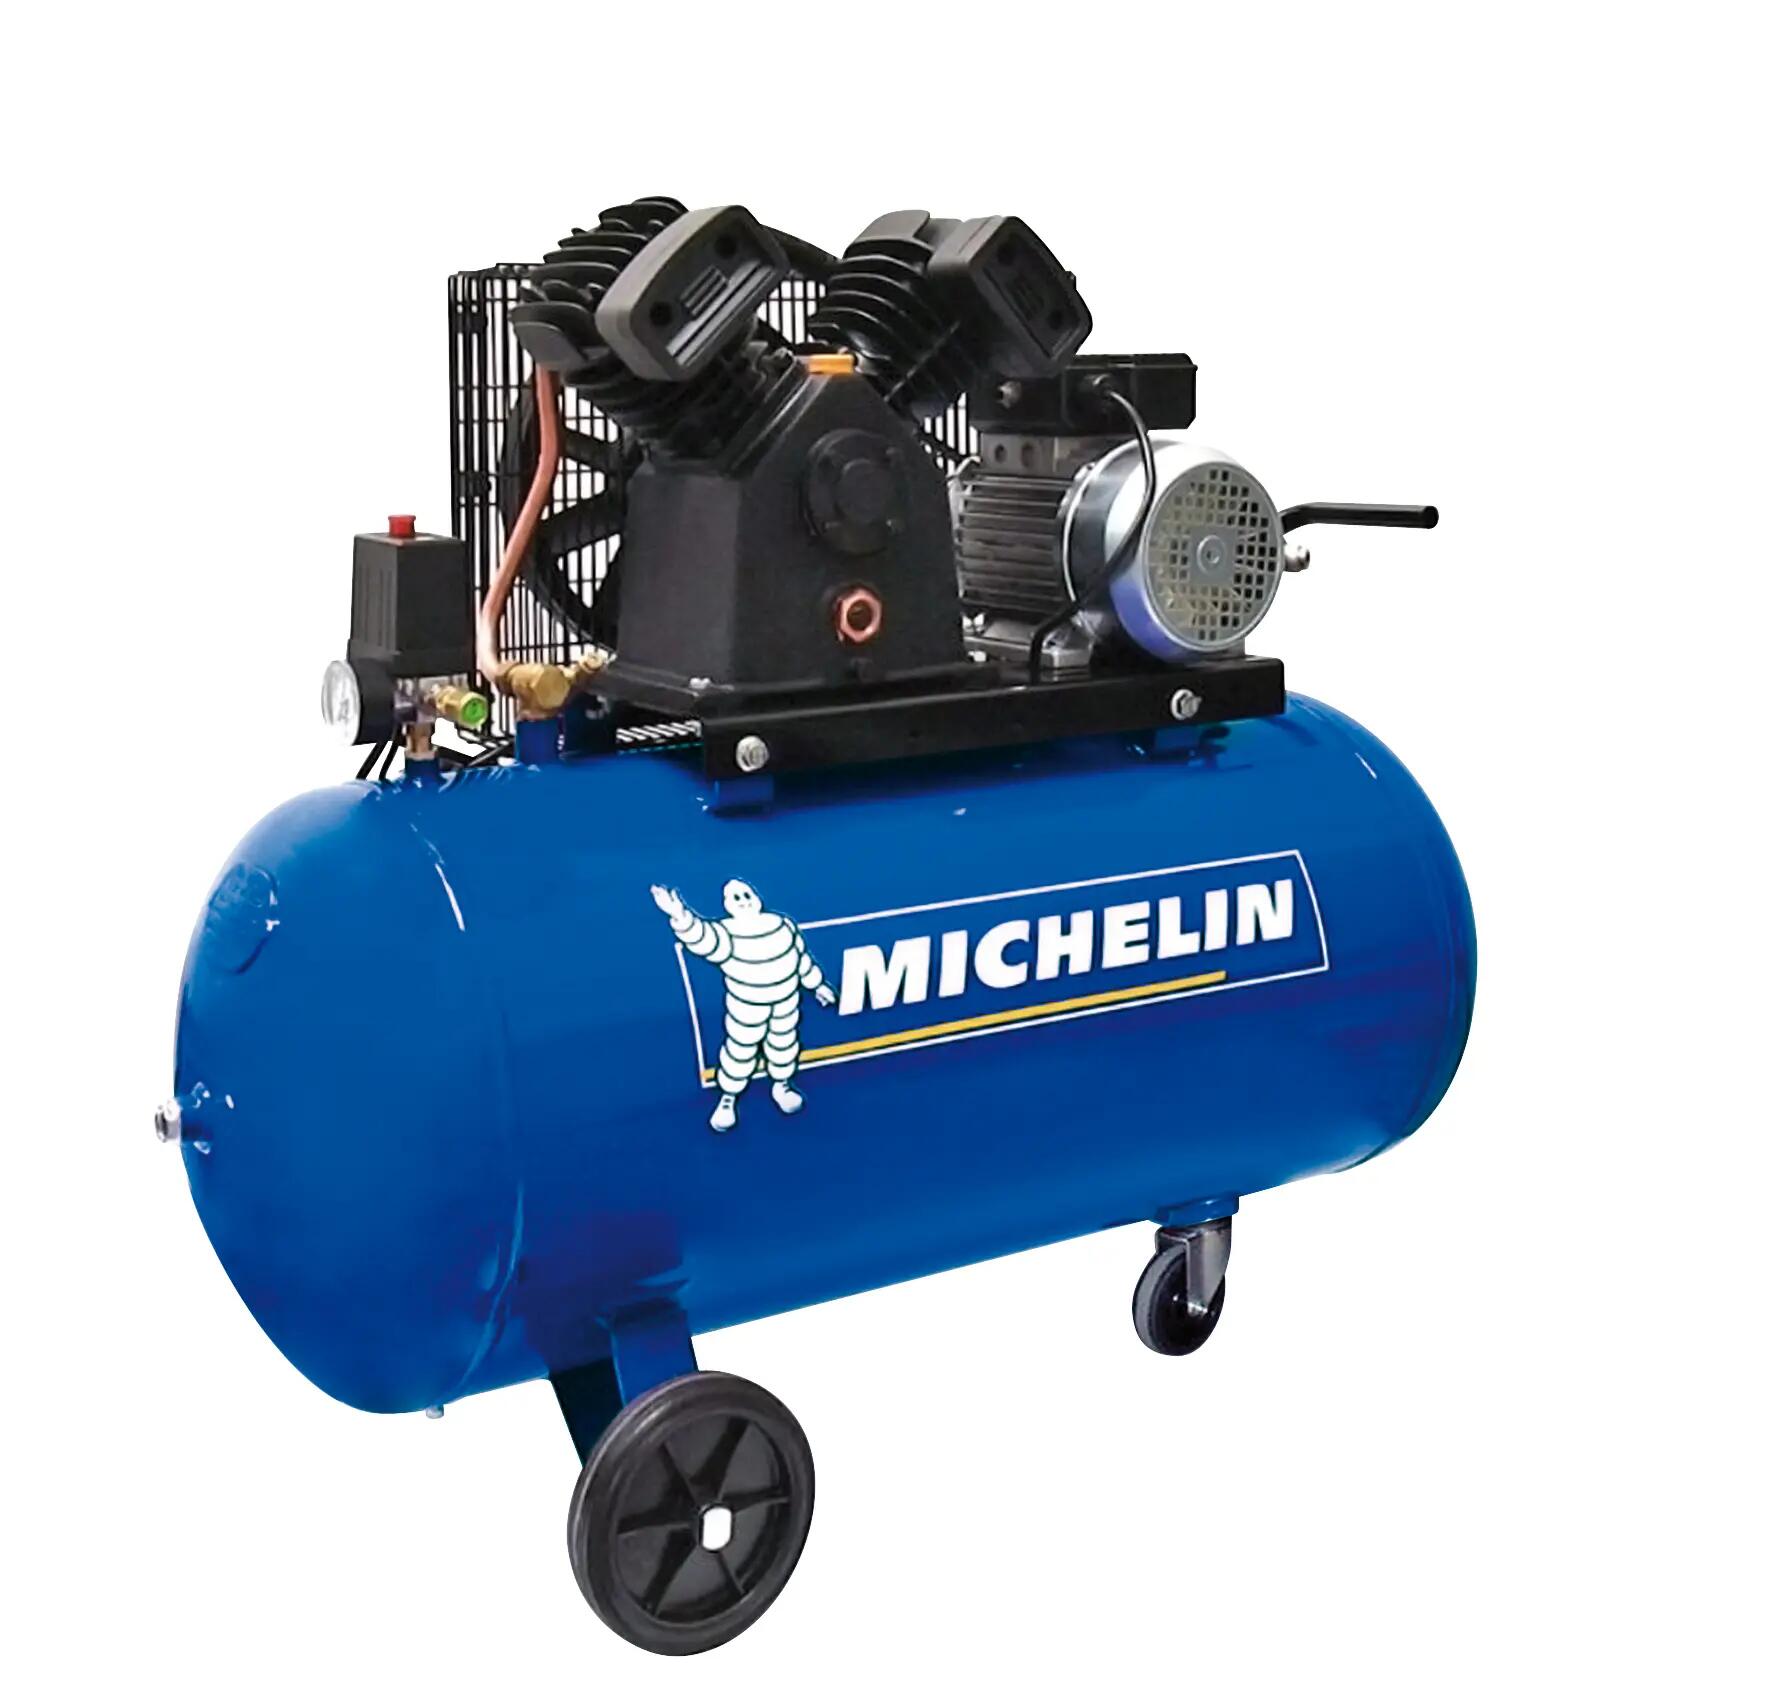 Compresor correas michelin ca-vcx100 de 3 cv y 100l de depósito